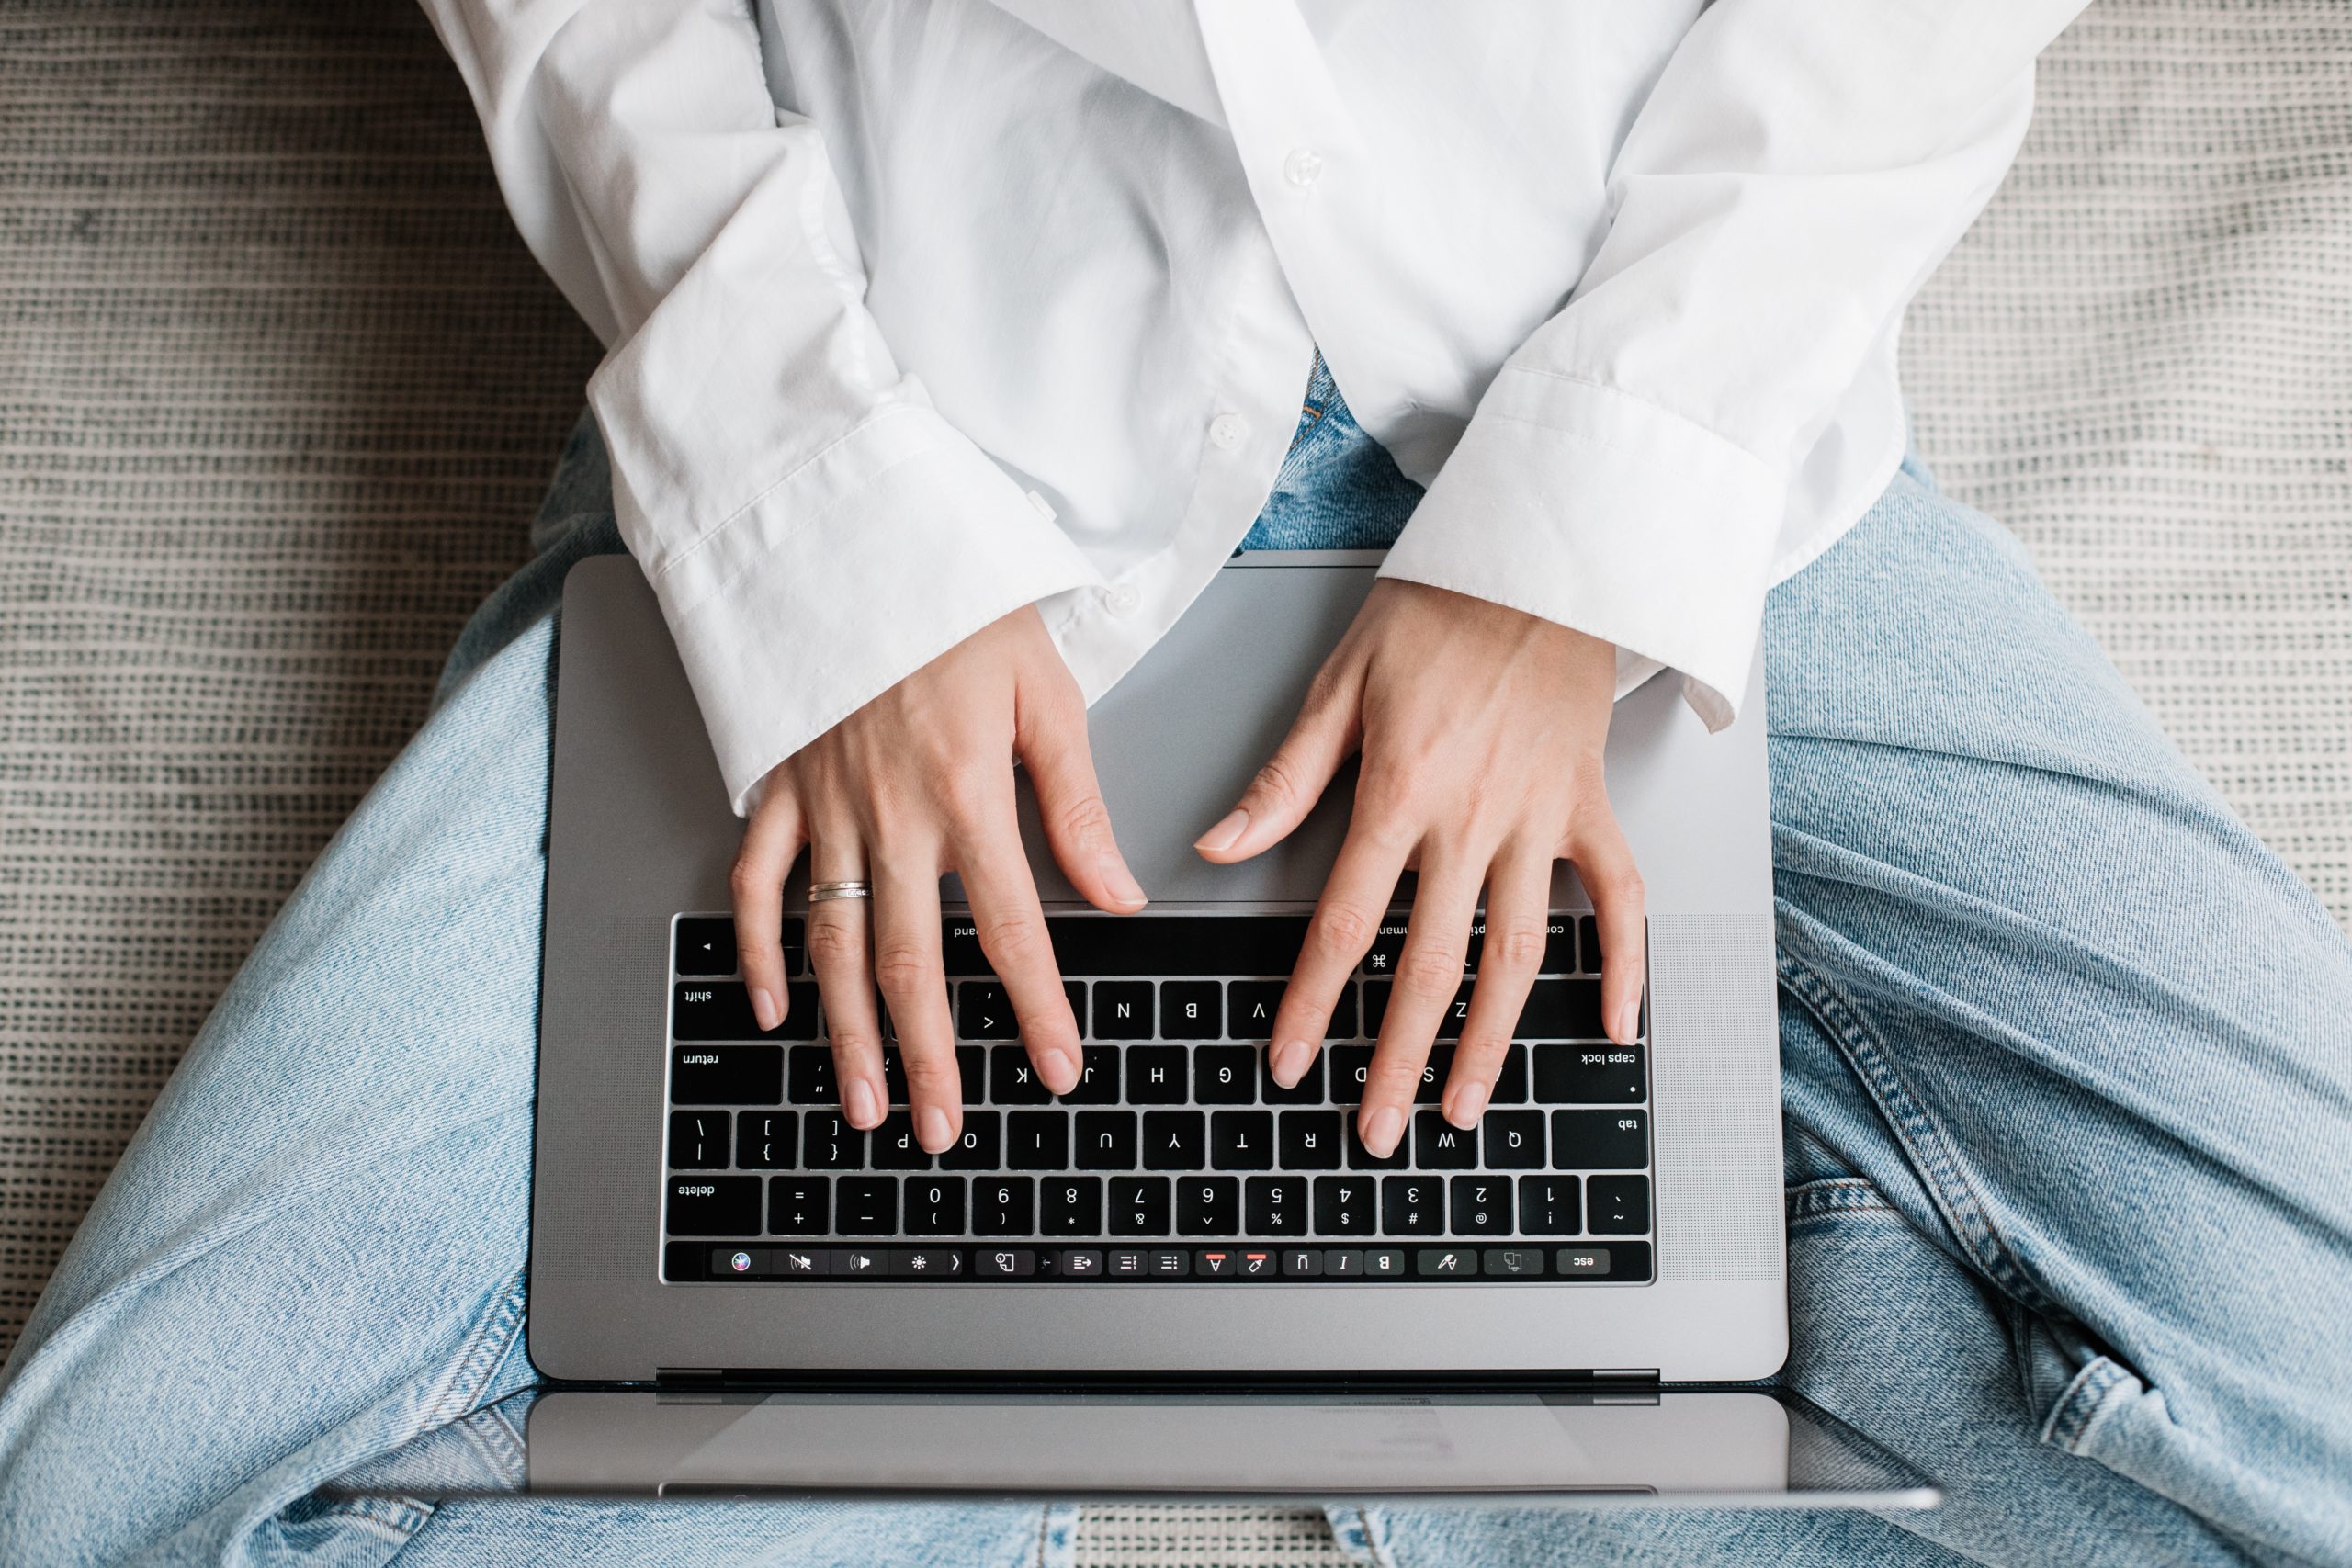 Dłonie kobiety oparte na klawiaturze laptopa, którego trzyma na kolanach